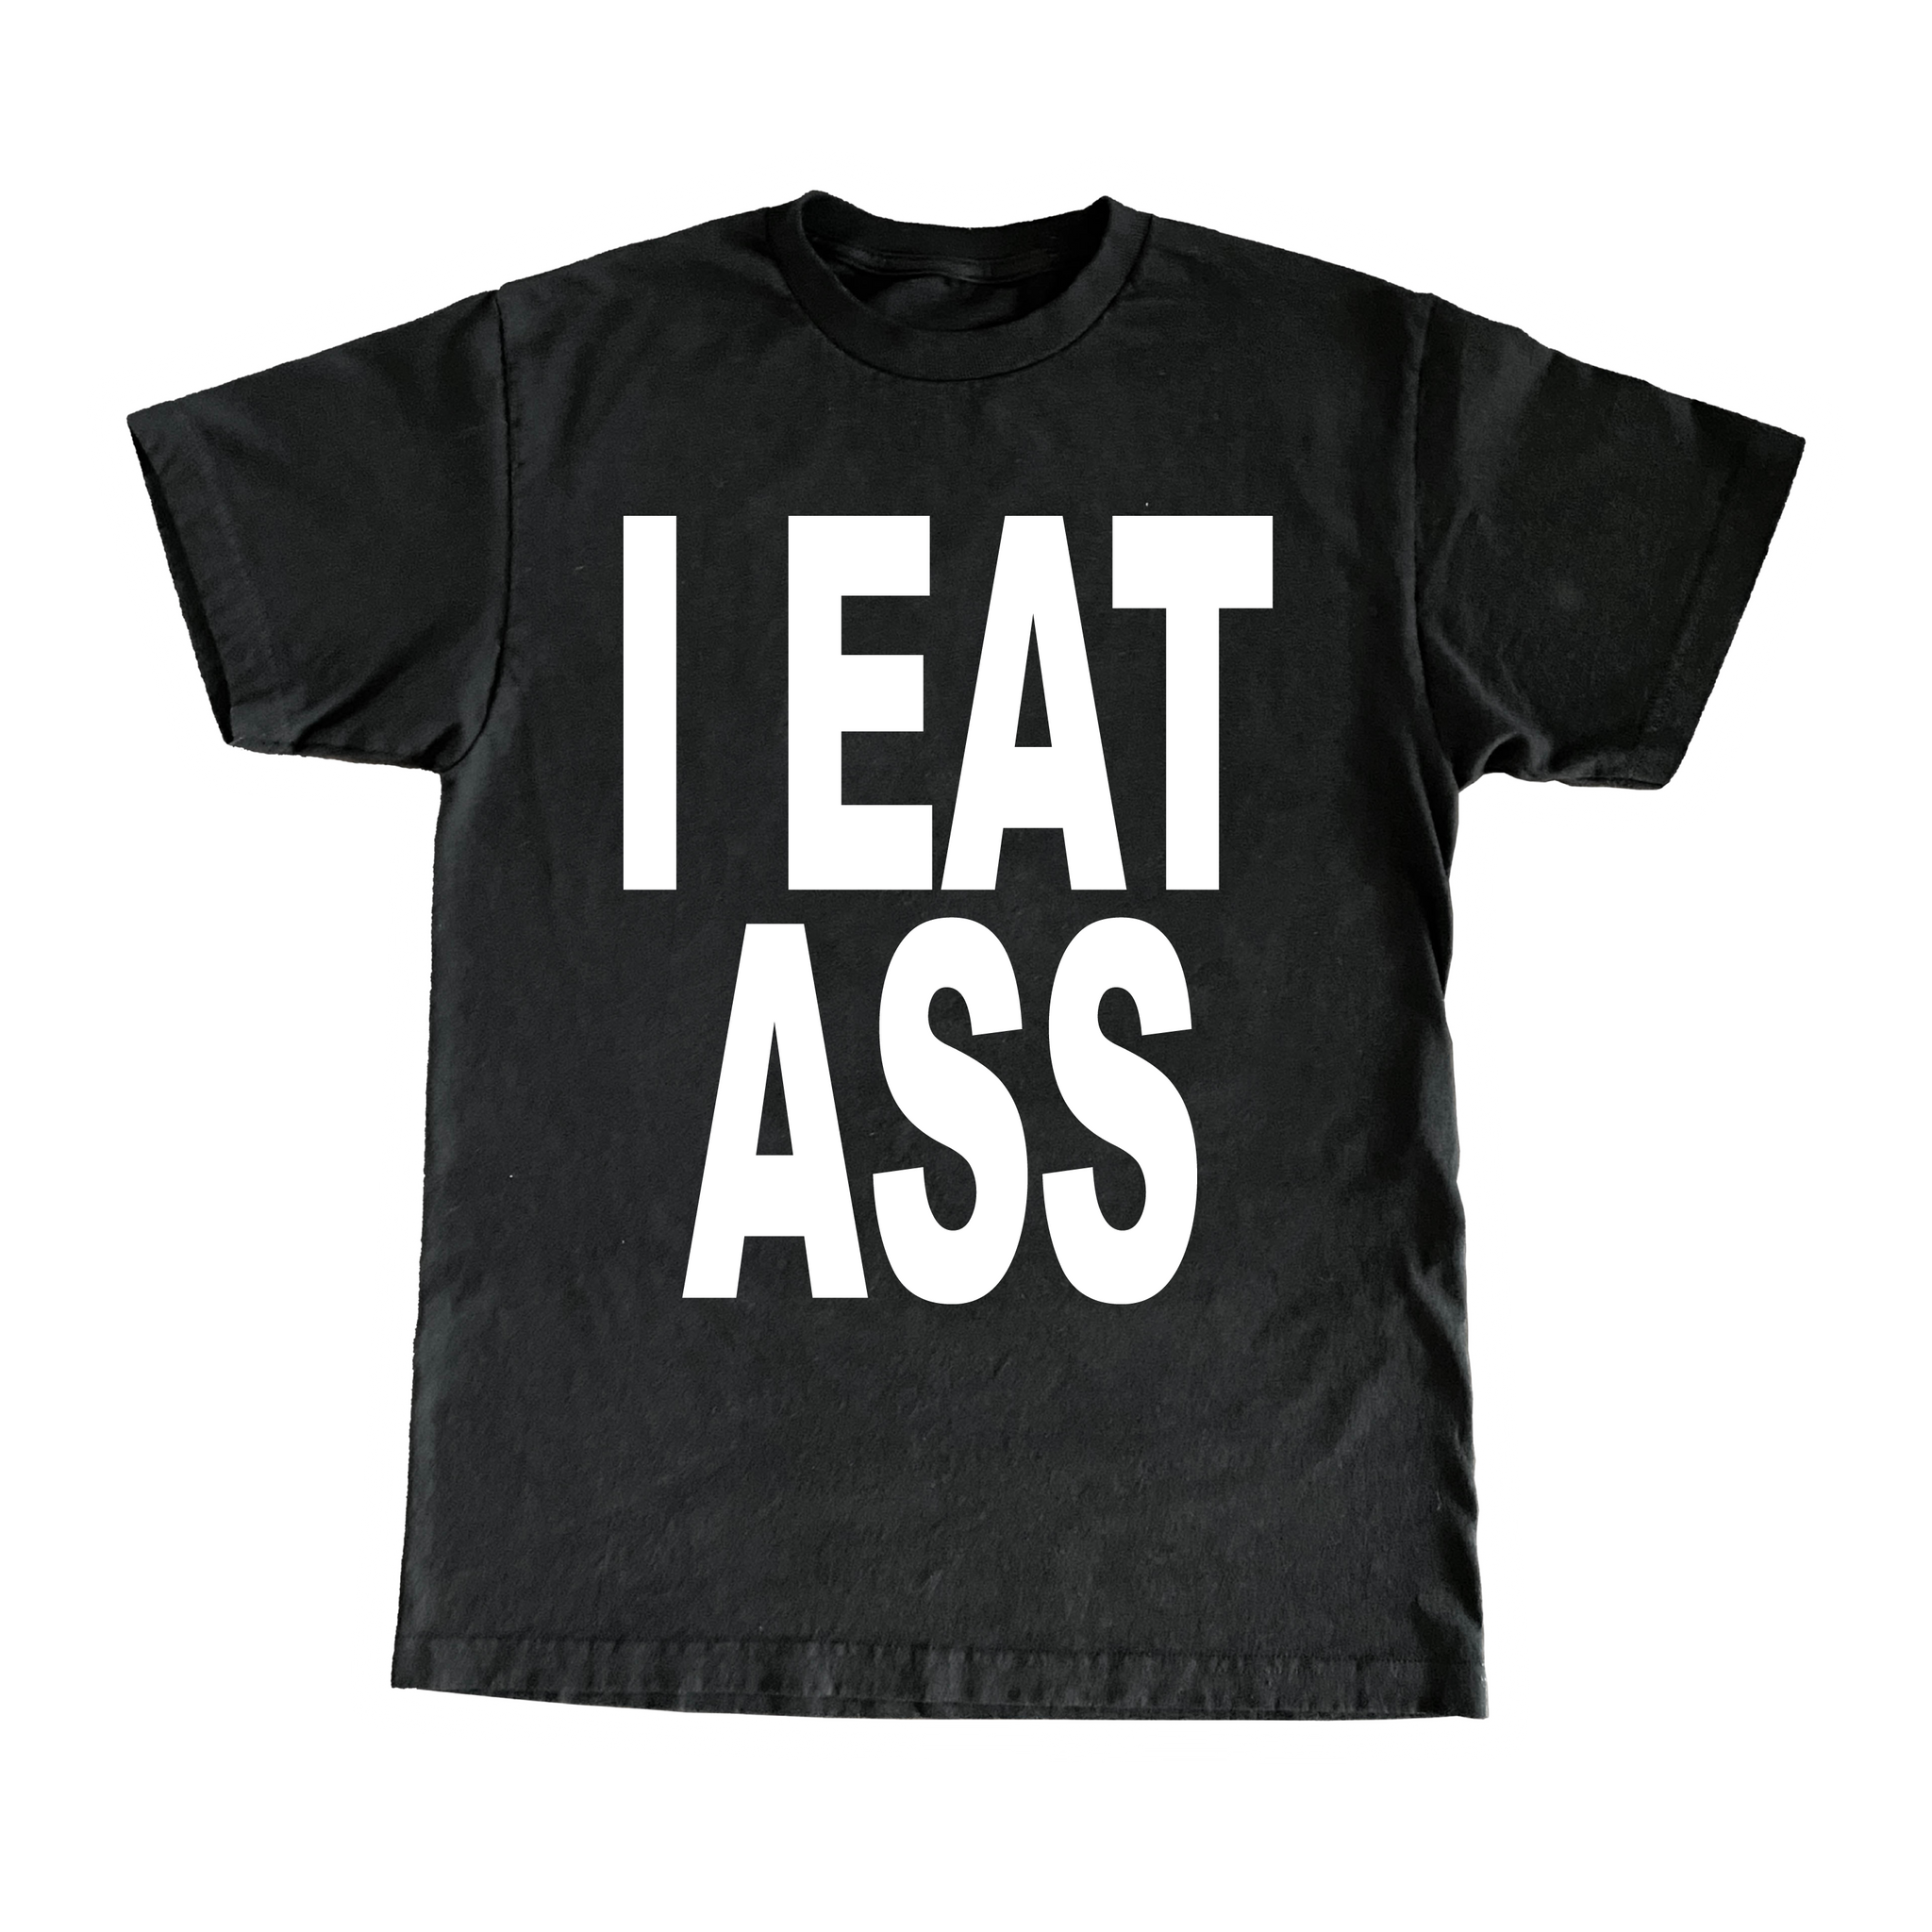 I Eat Ass